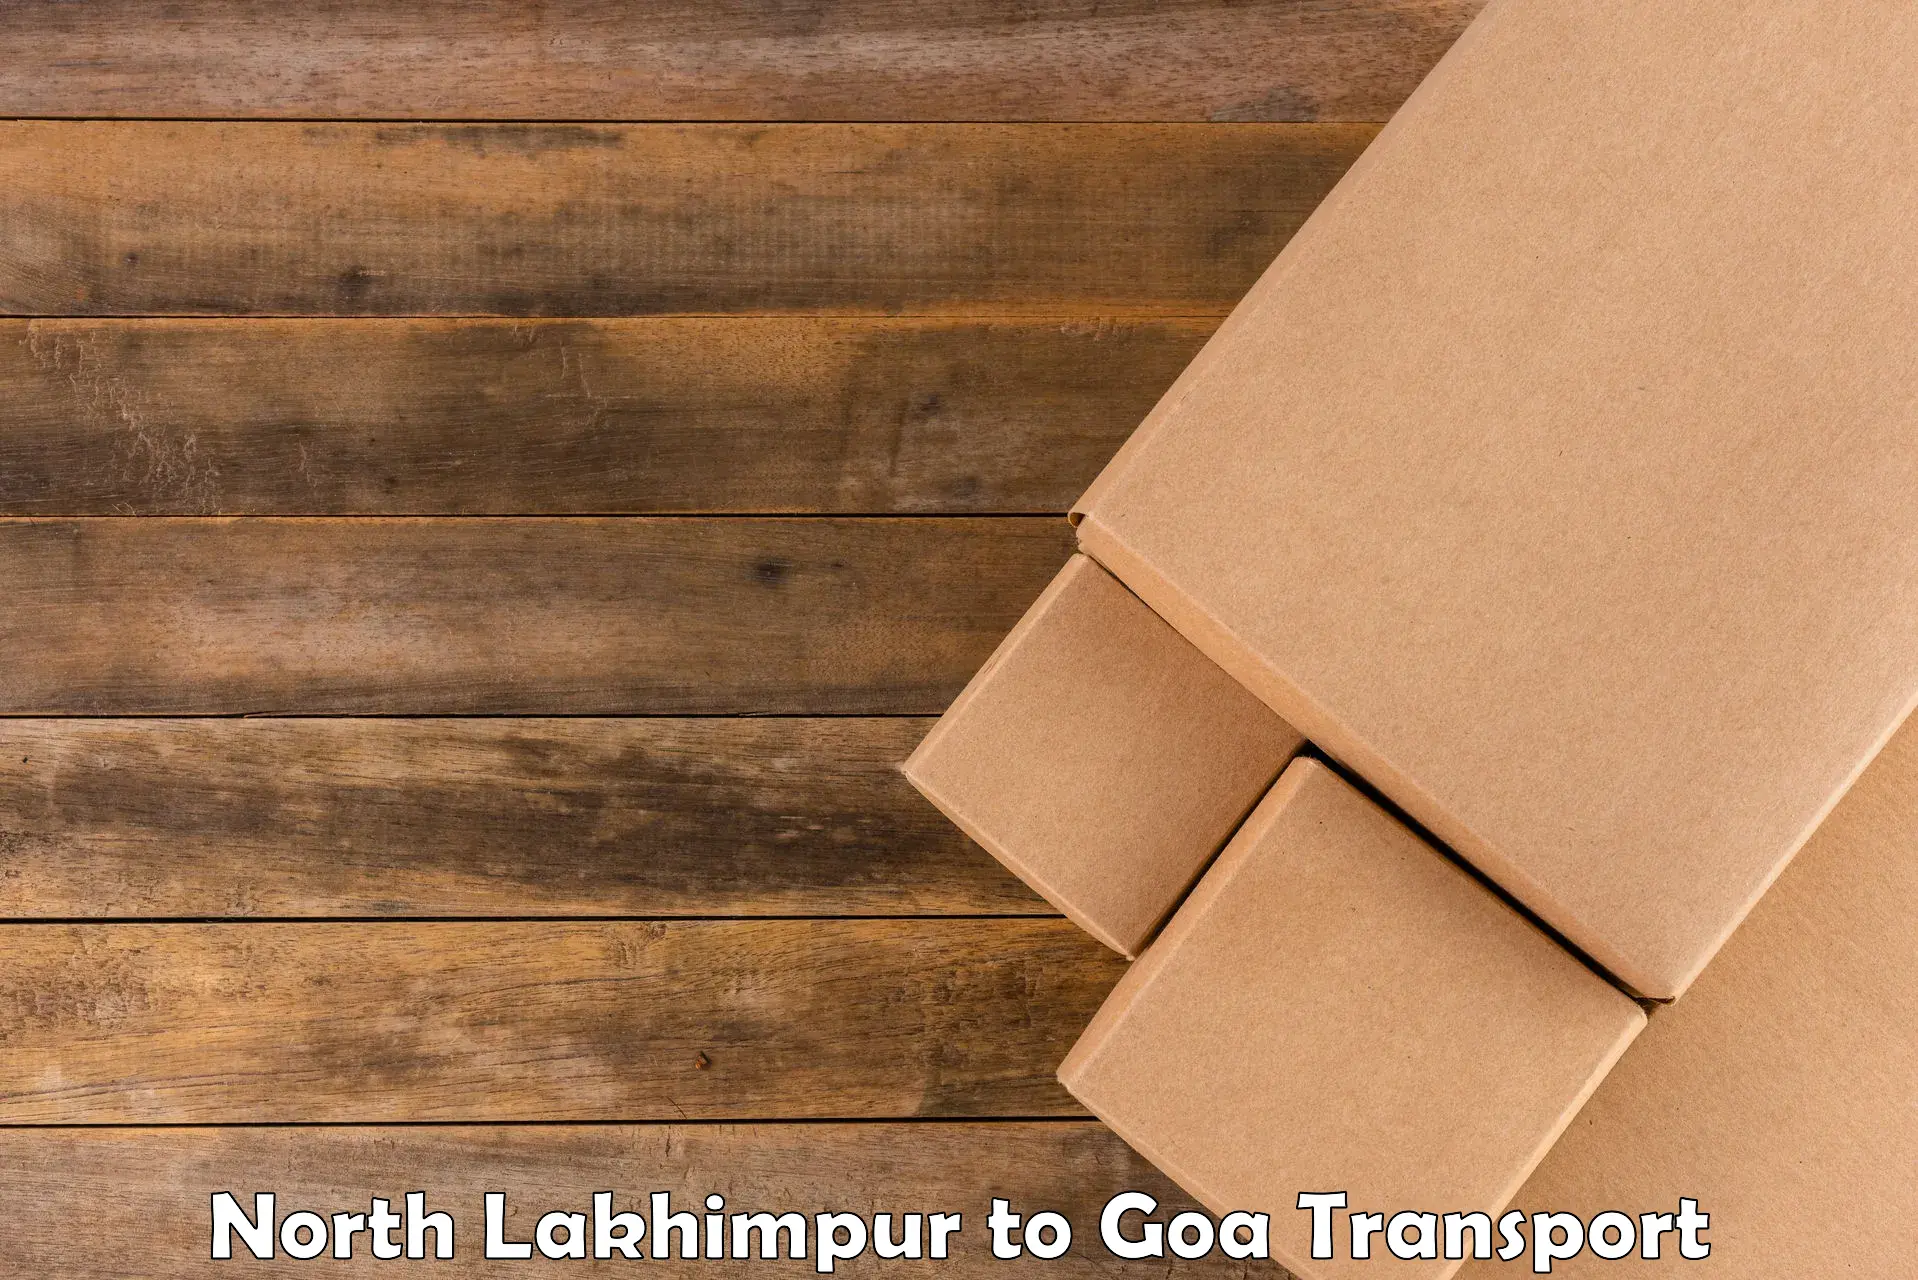 Road transport online services North Lakhimpur to Sanvordem